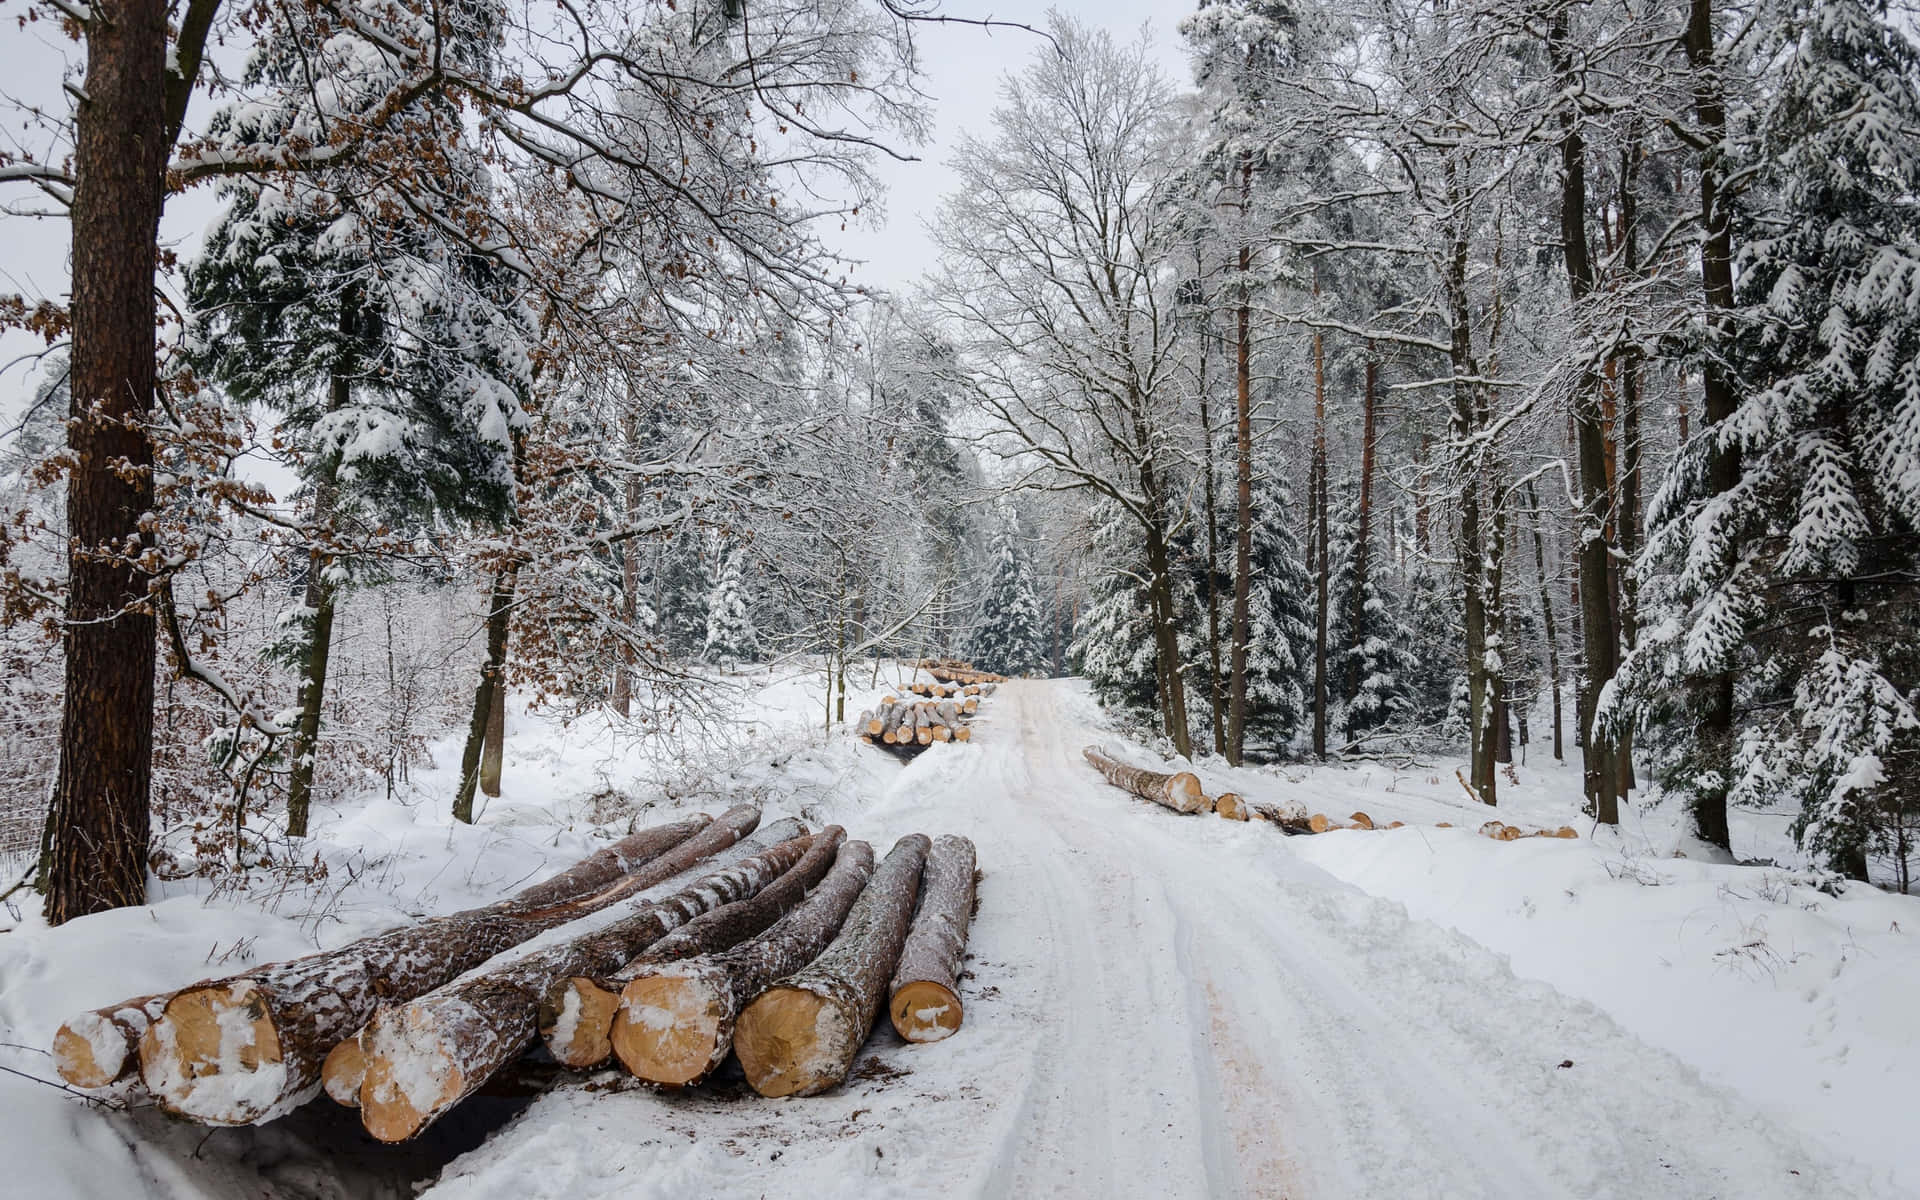 Envej Dækket Af Sne Med Træstammer I Sneen.